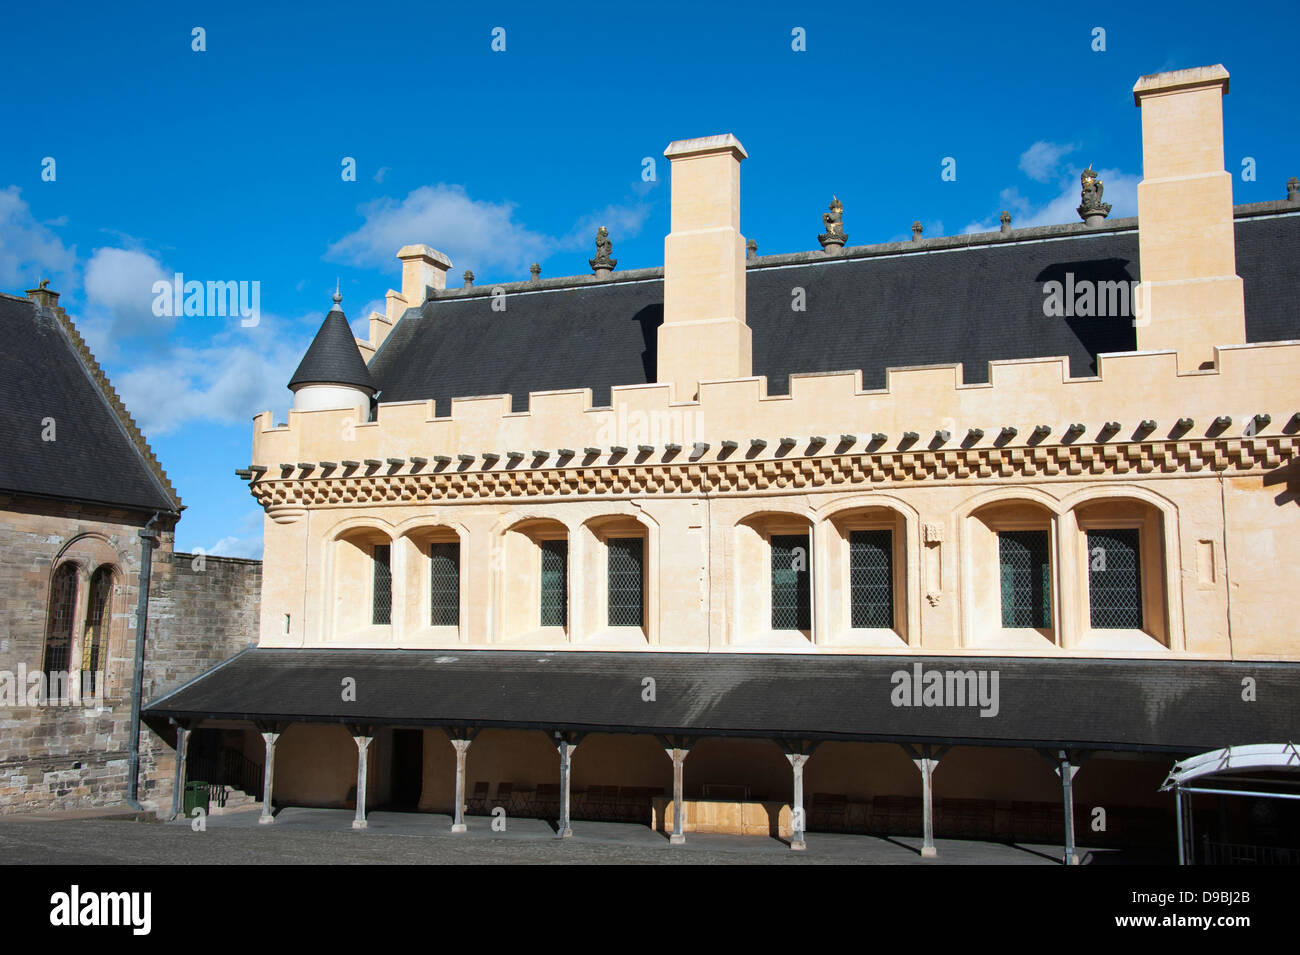 Grande salle, le château de Stirling, Stirling, Ecosse, Grande-Bretagne, Europe , Grosse Halle, Schloss Stirling, Stirling, Schottland, G Banque D'Images